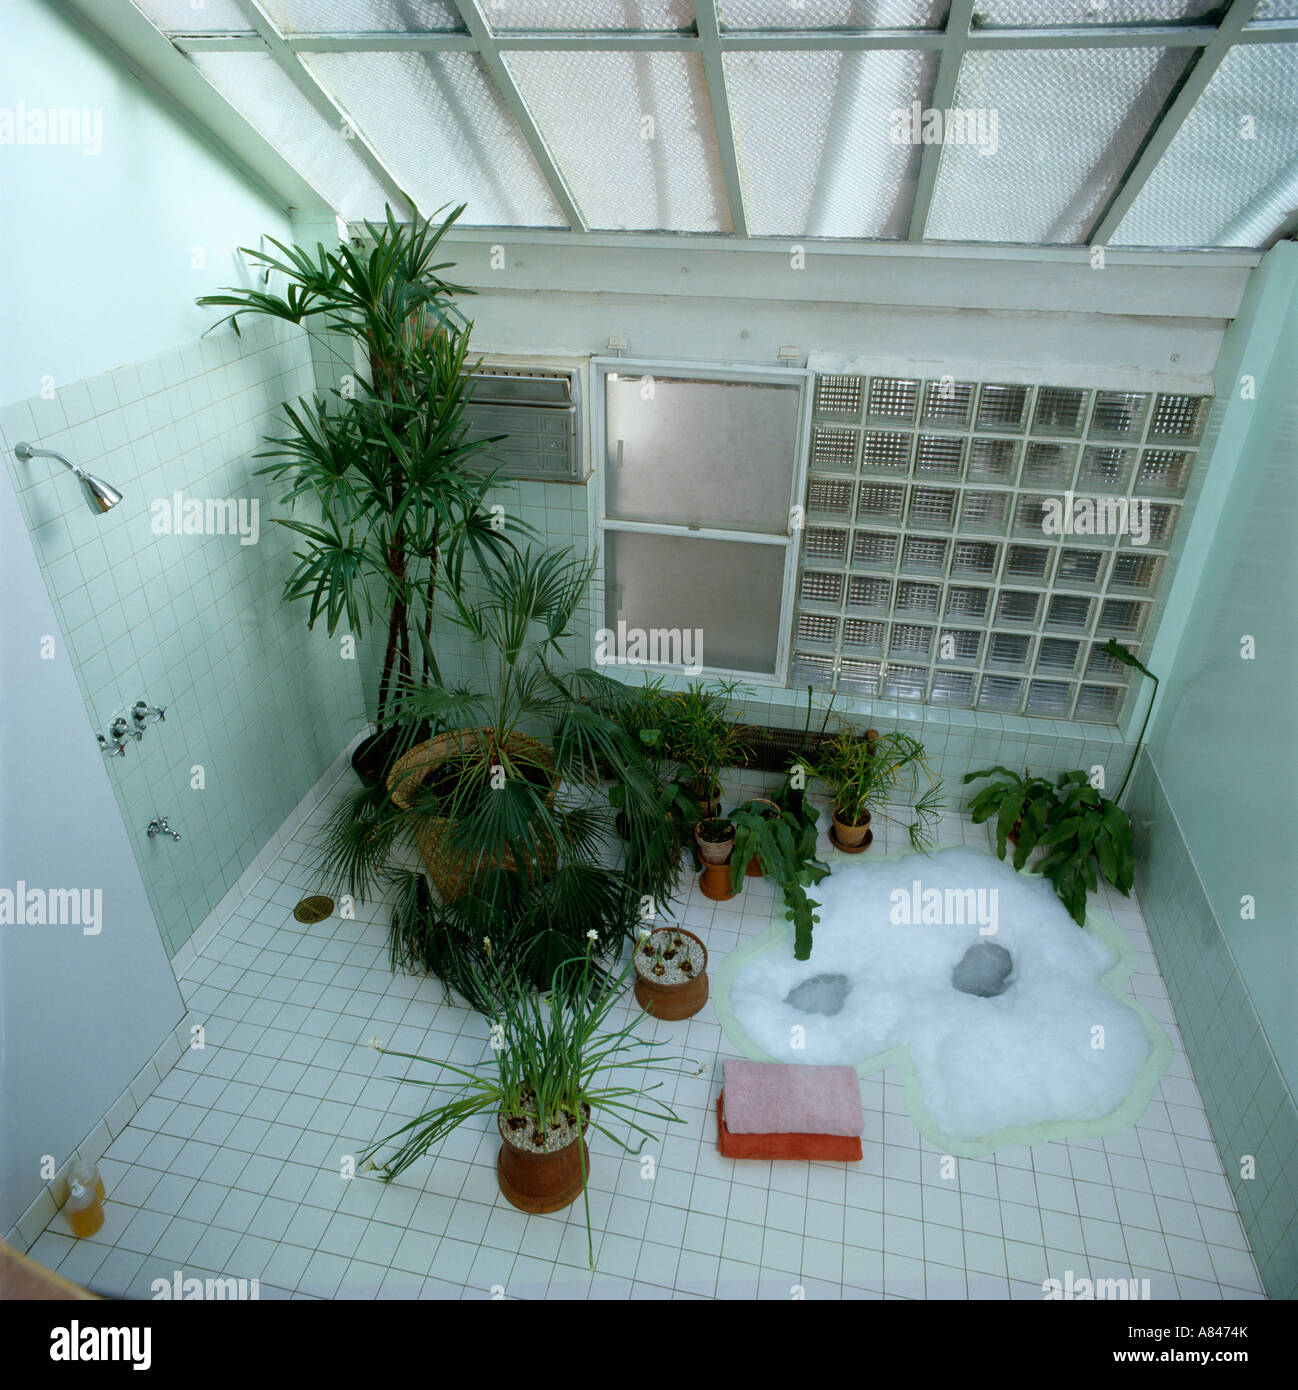 Houseplants verde in bianco degli anni ottanta il bagno di vetro con un muro di mattoni e affondata la vasca calda visto dal di sopra Foto Stock